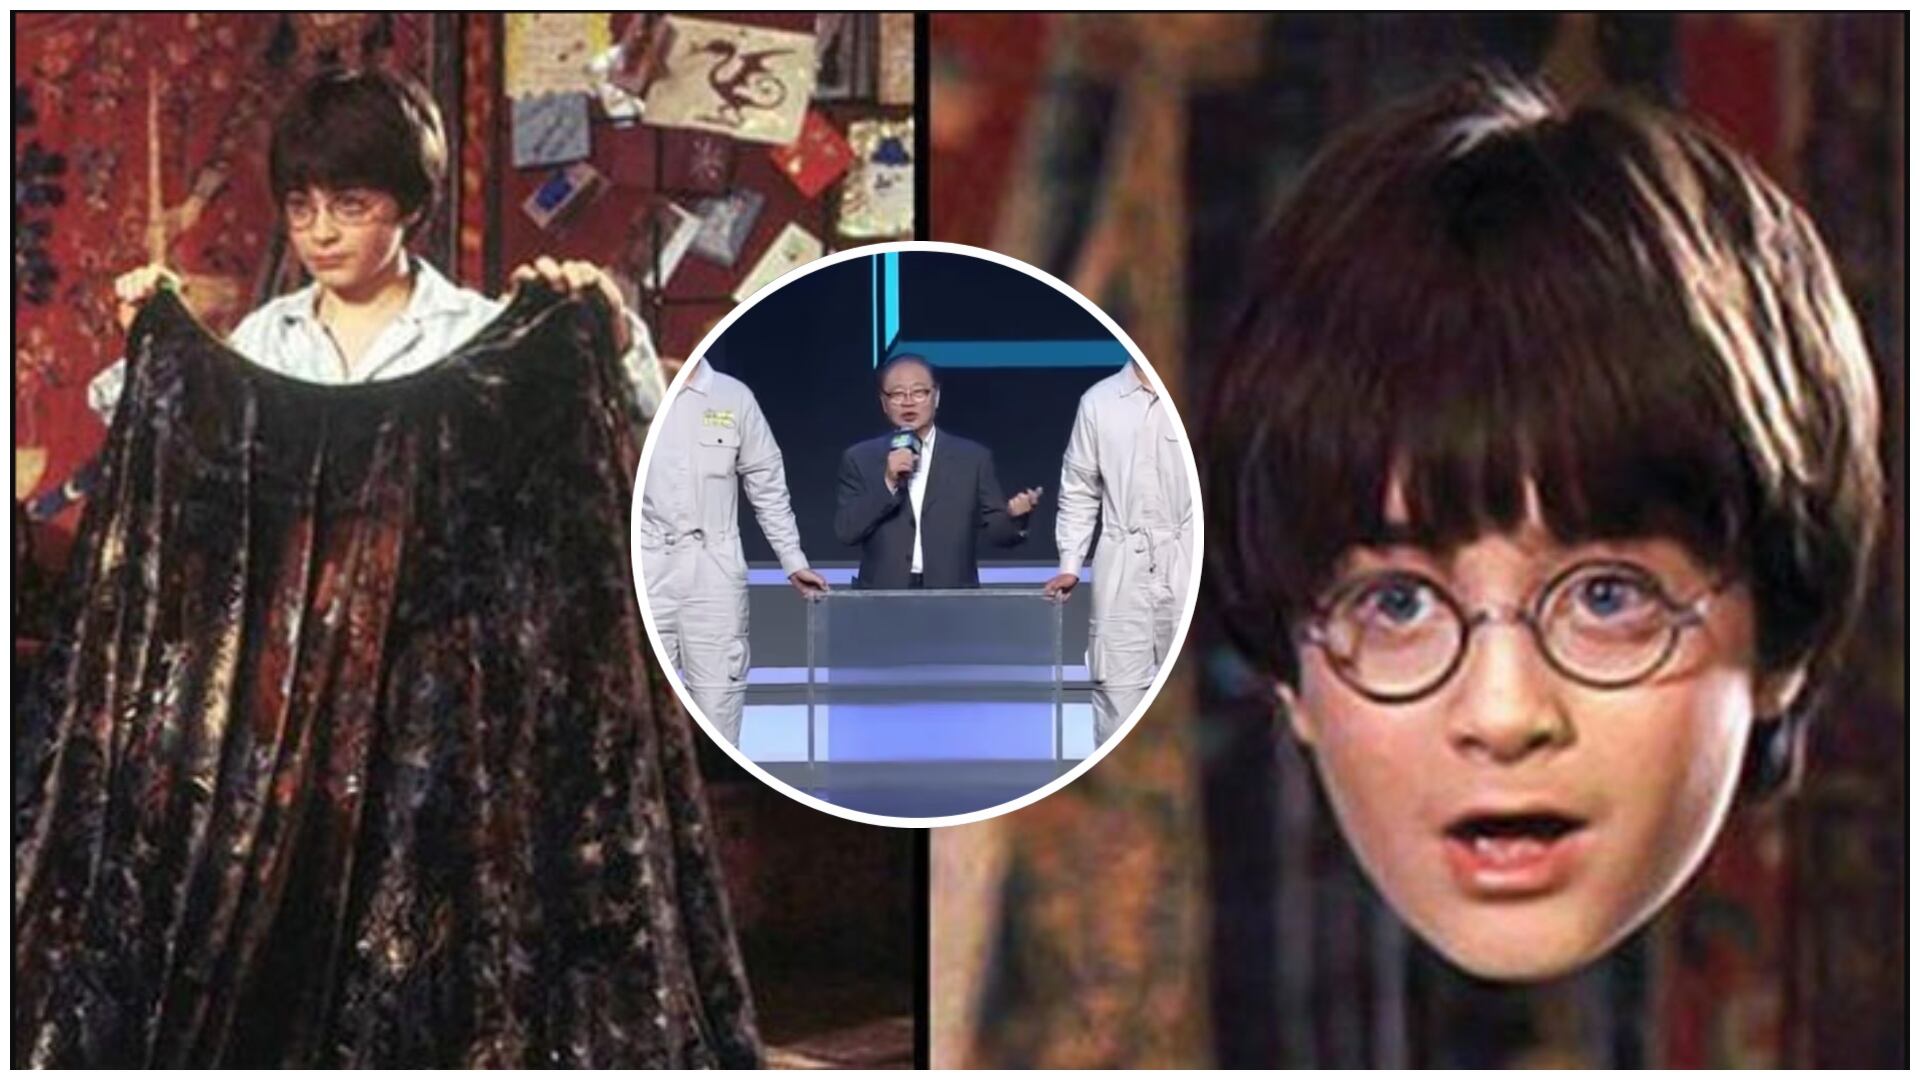 La capa de invisibilidad de Harry Potter es real y la ciencia se escandaliza por sus usos poco éticos (Captura de pantalla de Harry Potter y Capa de invisibilidad presentada en China)